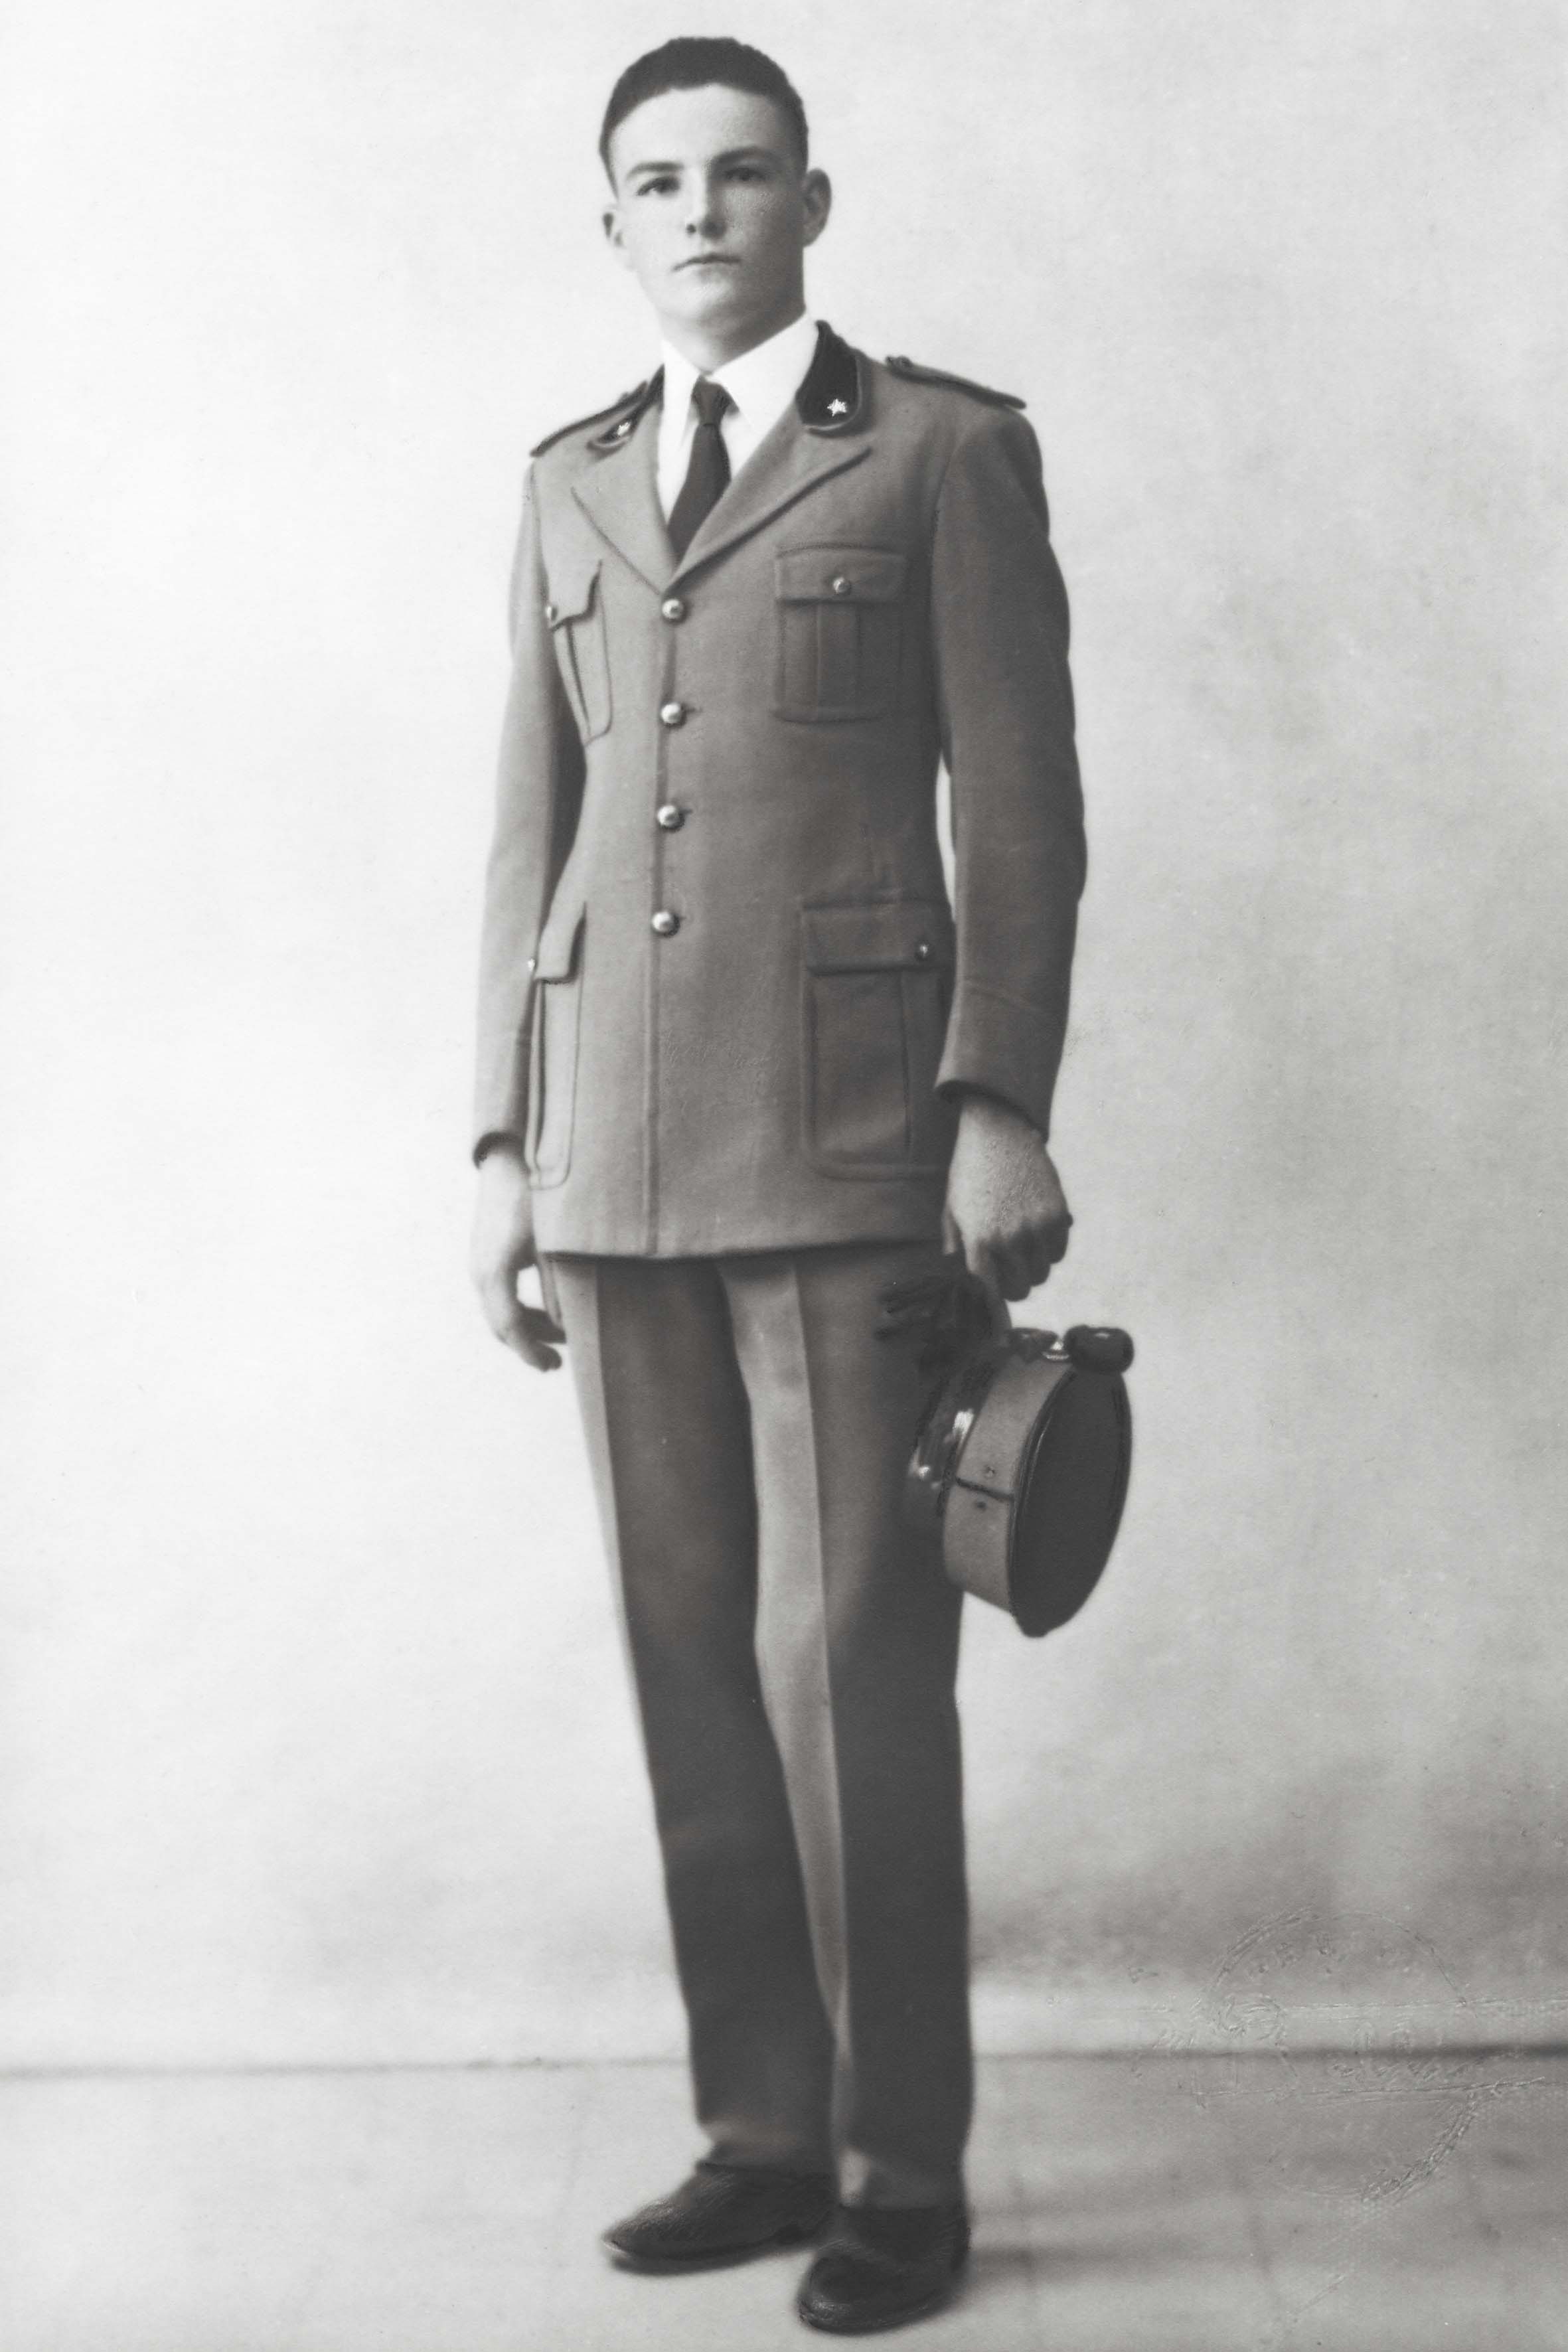 Gianfranco allievo della scuola militare di Roma. 1928.